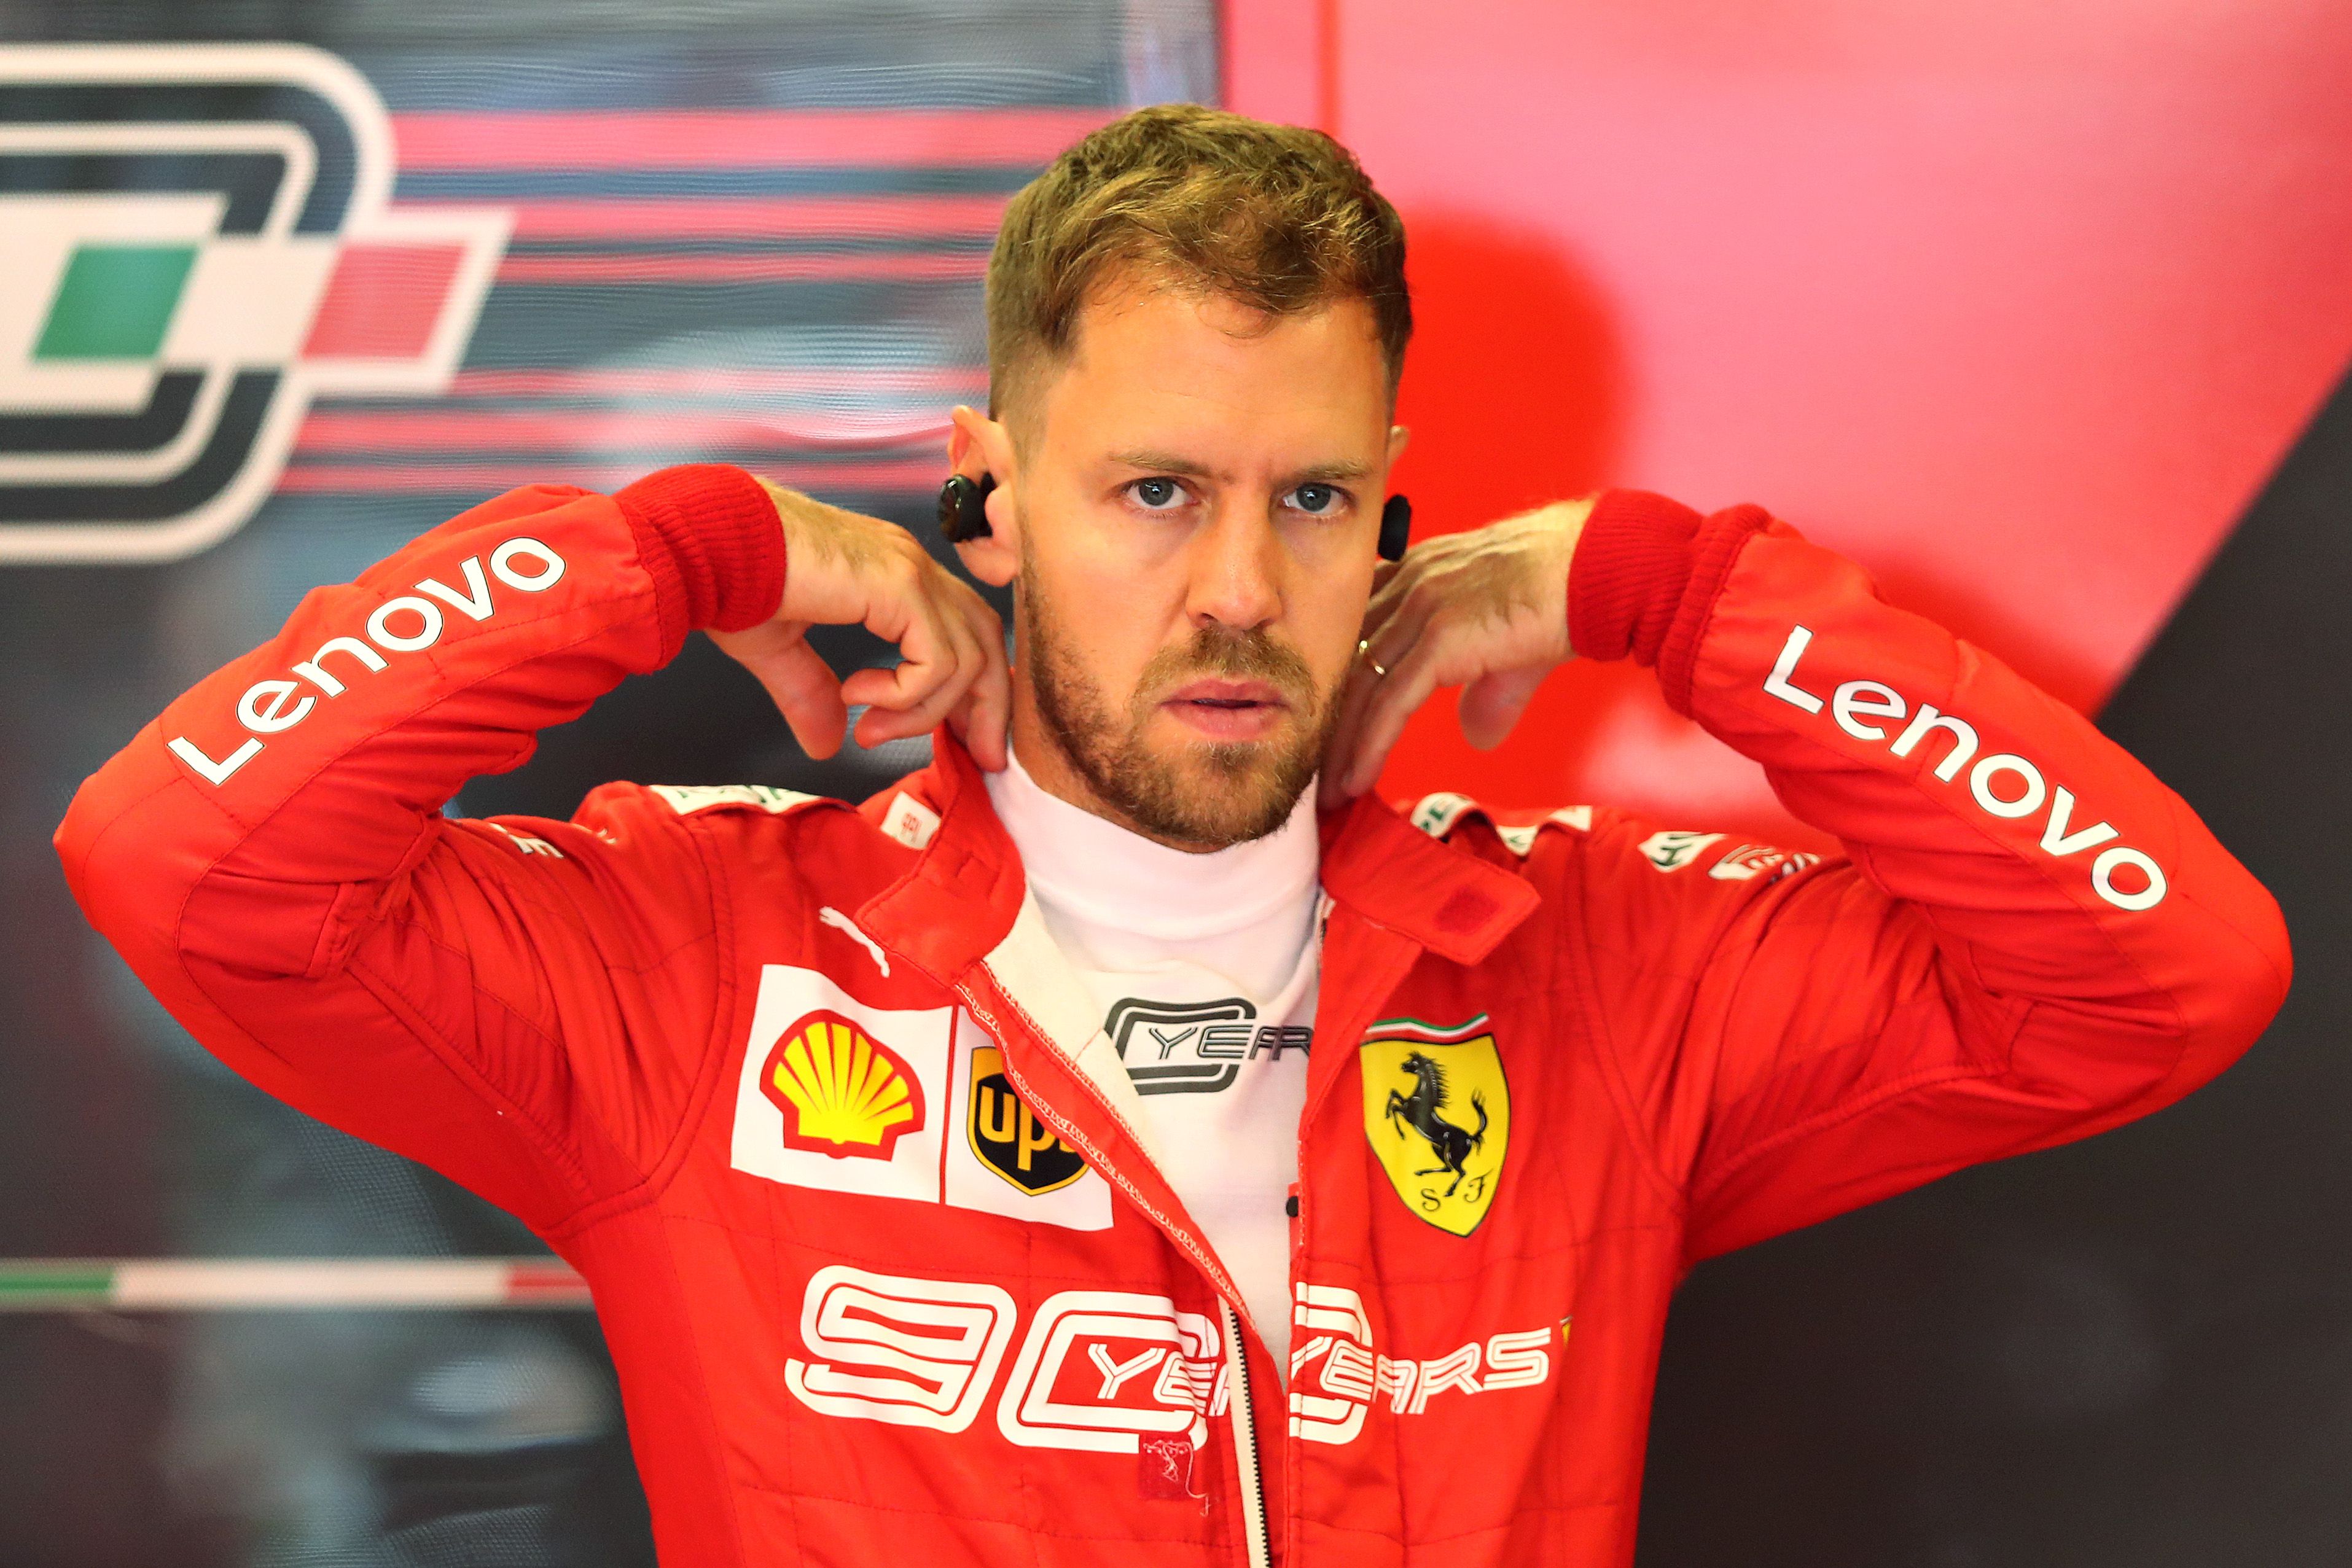 Sebastian Vettel énekelve búcsúzott a Ferraritól  / Fotó: Getty Images